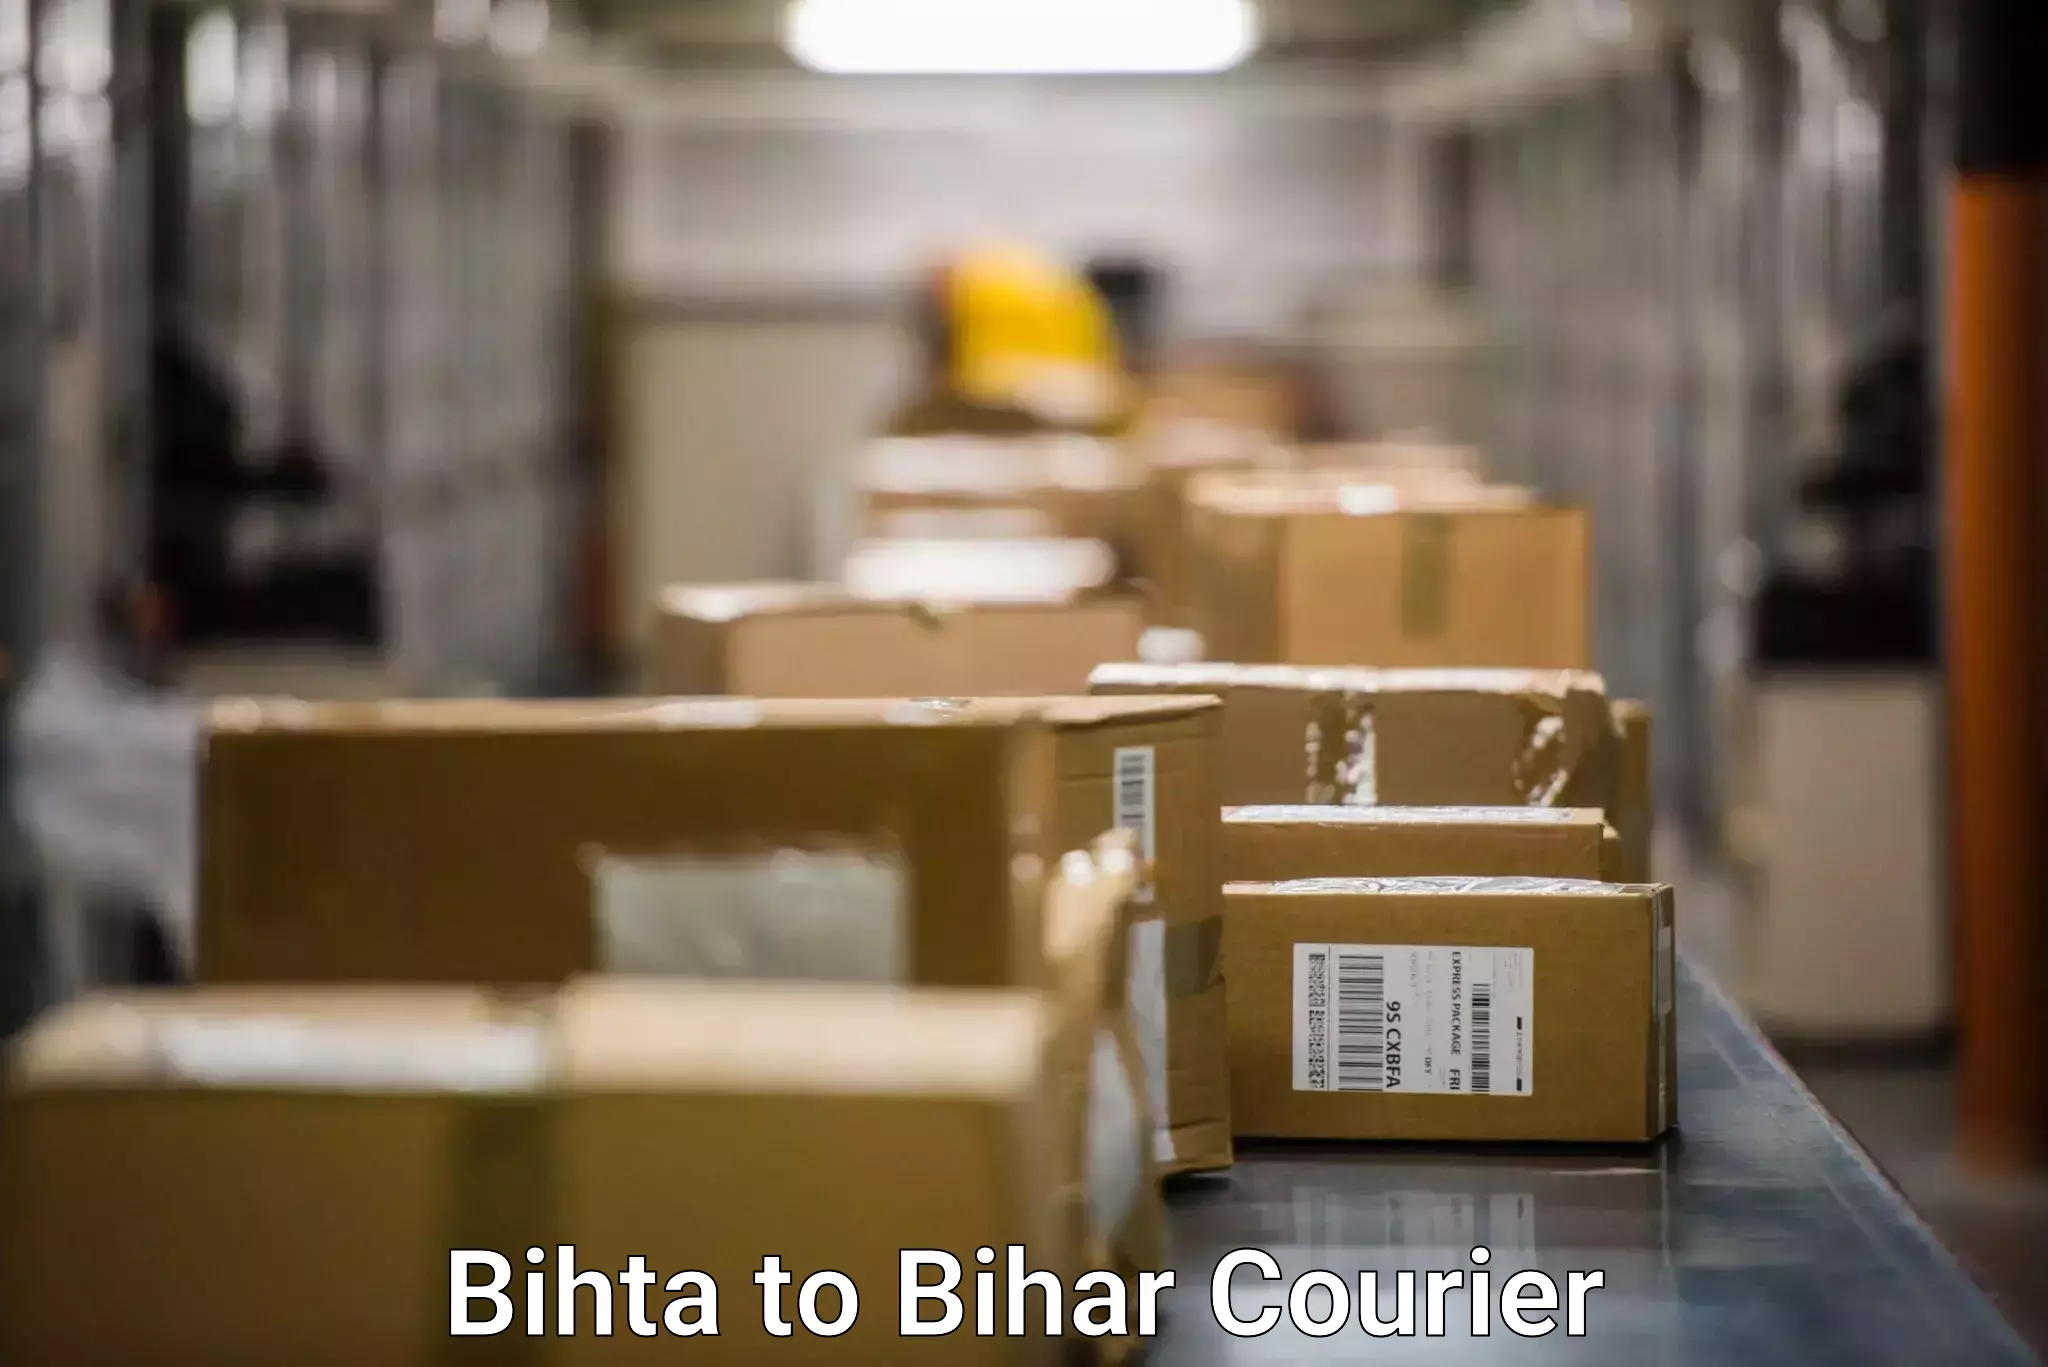 Doorstep delivery service Bihta to Bihar